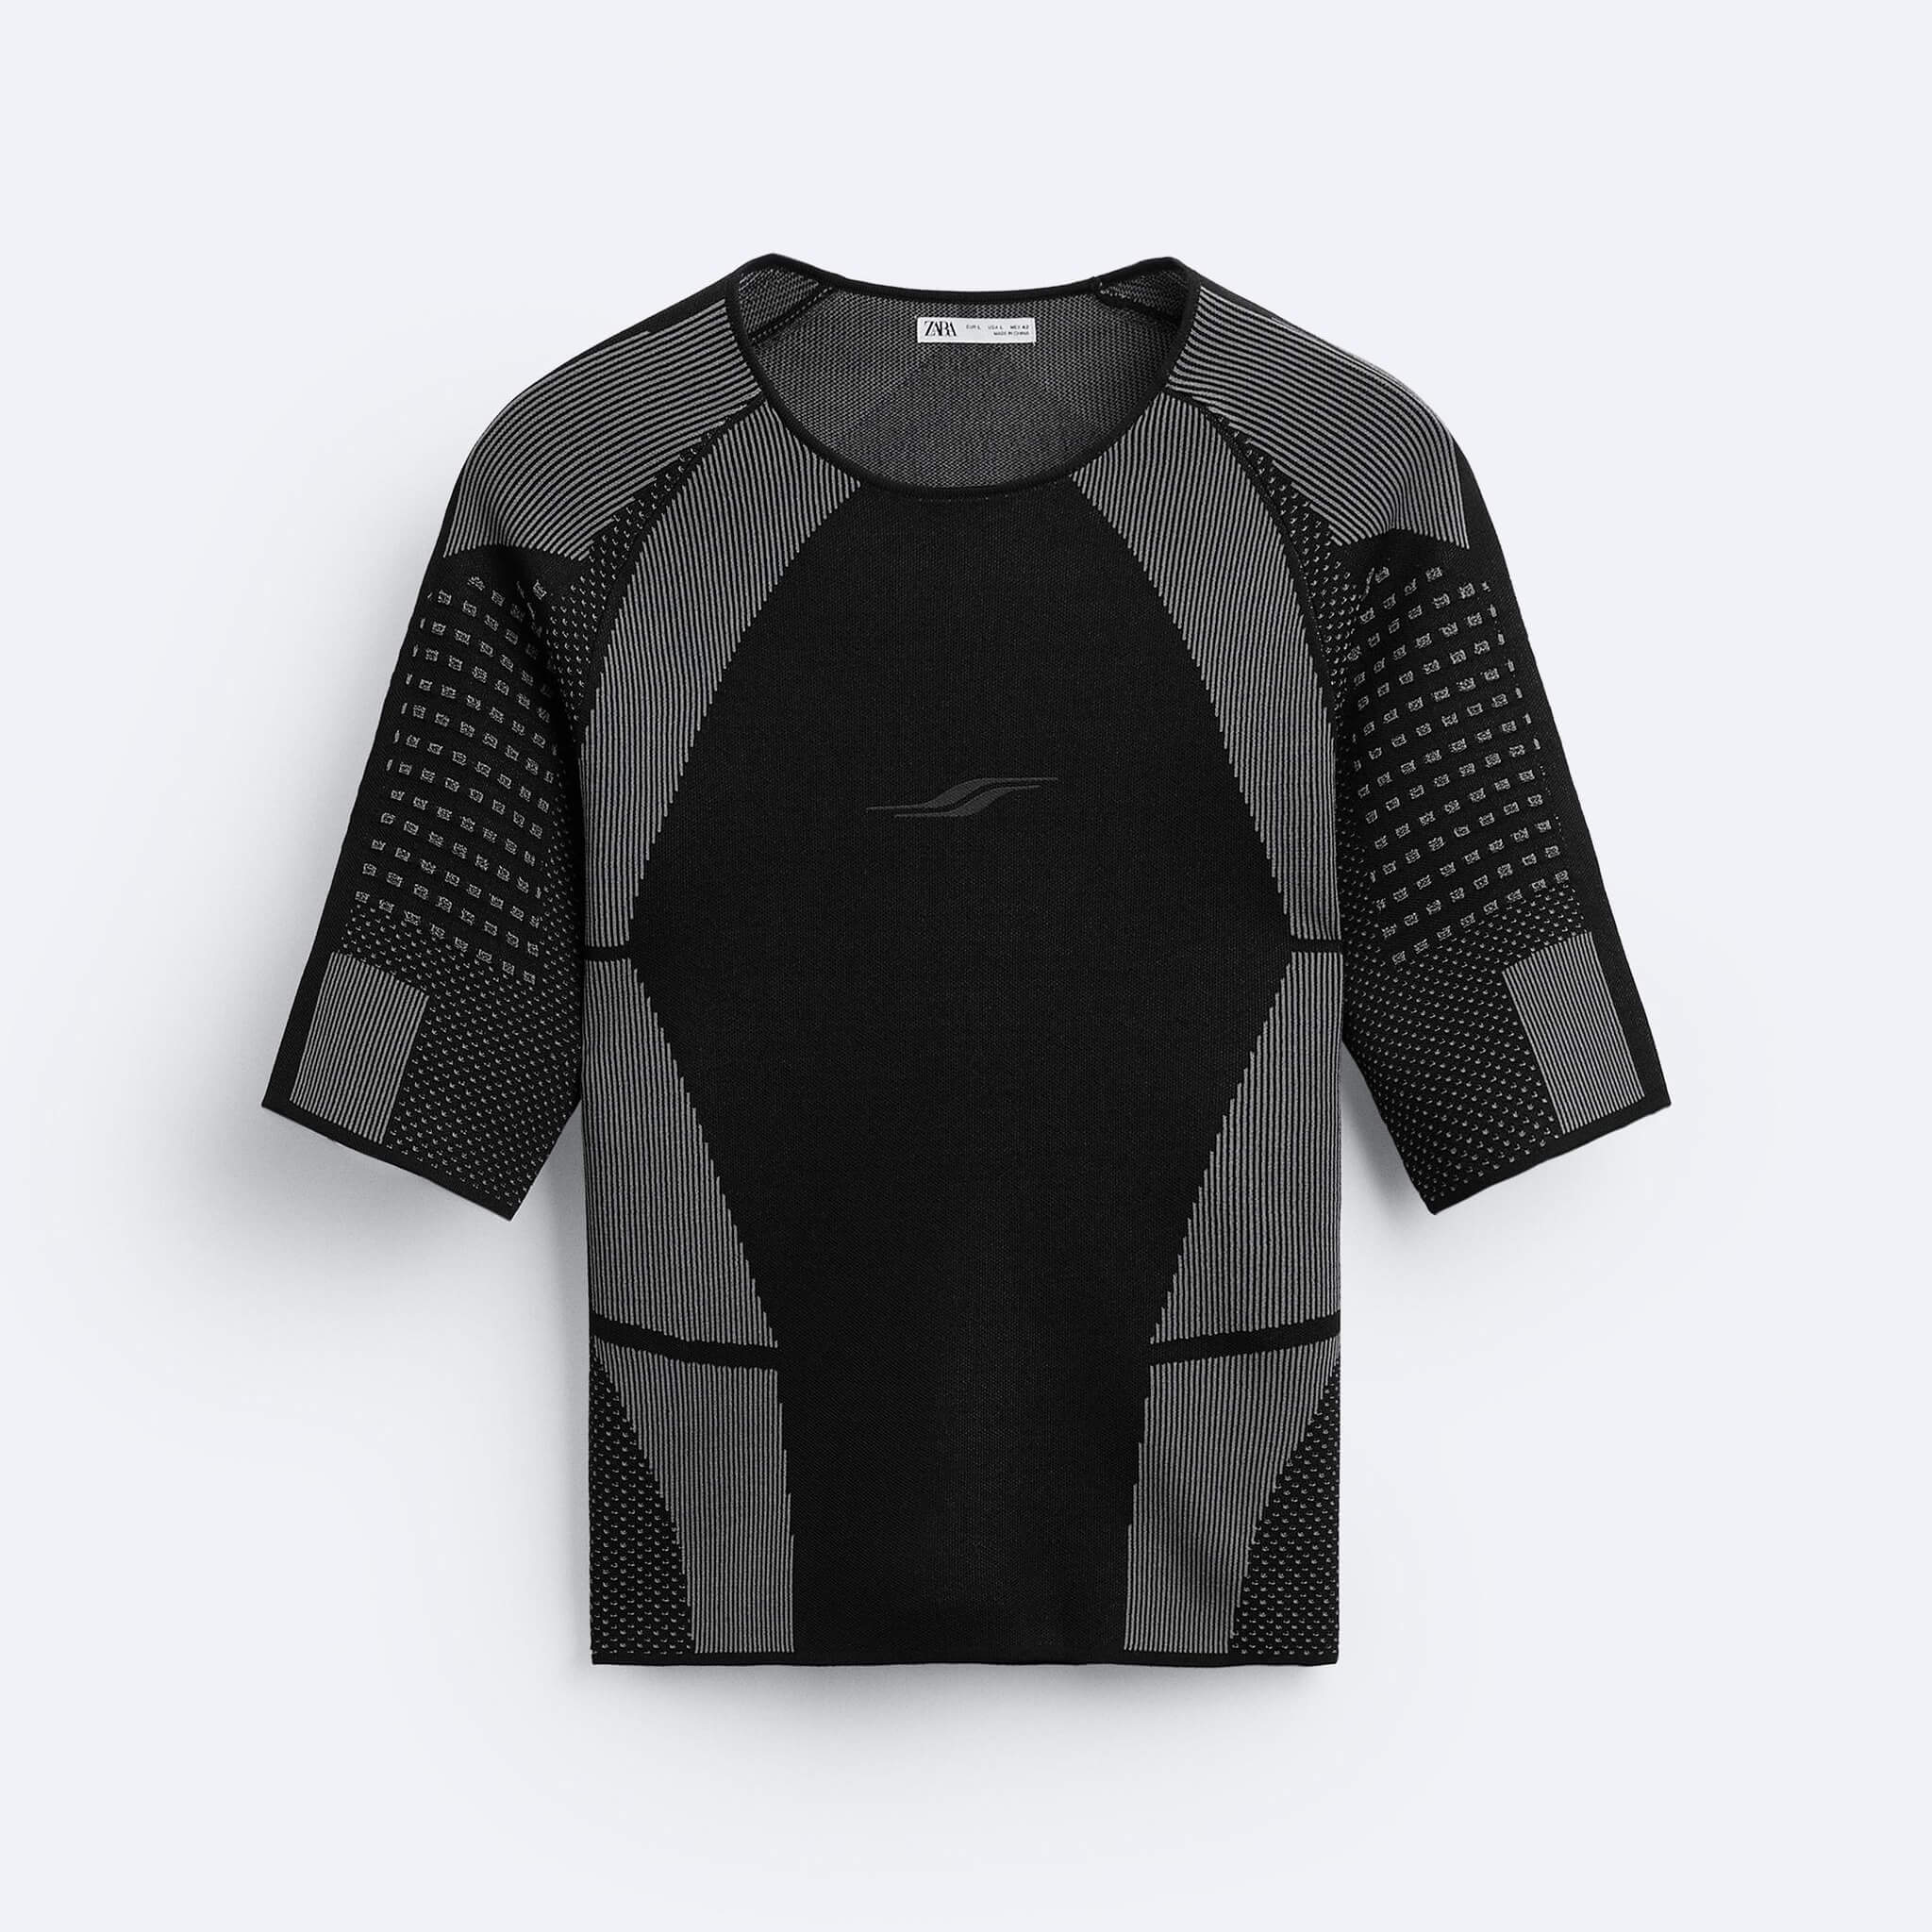 Футболка Zara Contrast Textured Knit, черный футболка zara contrast printed черный